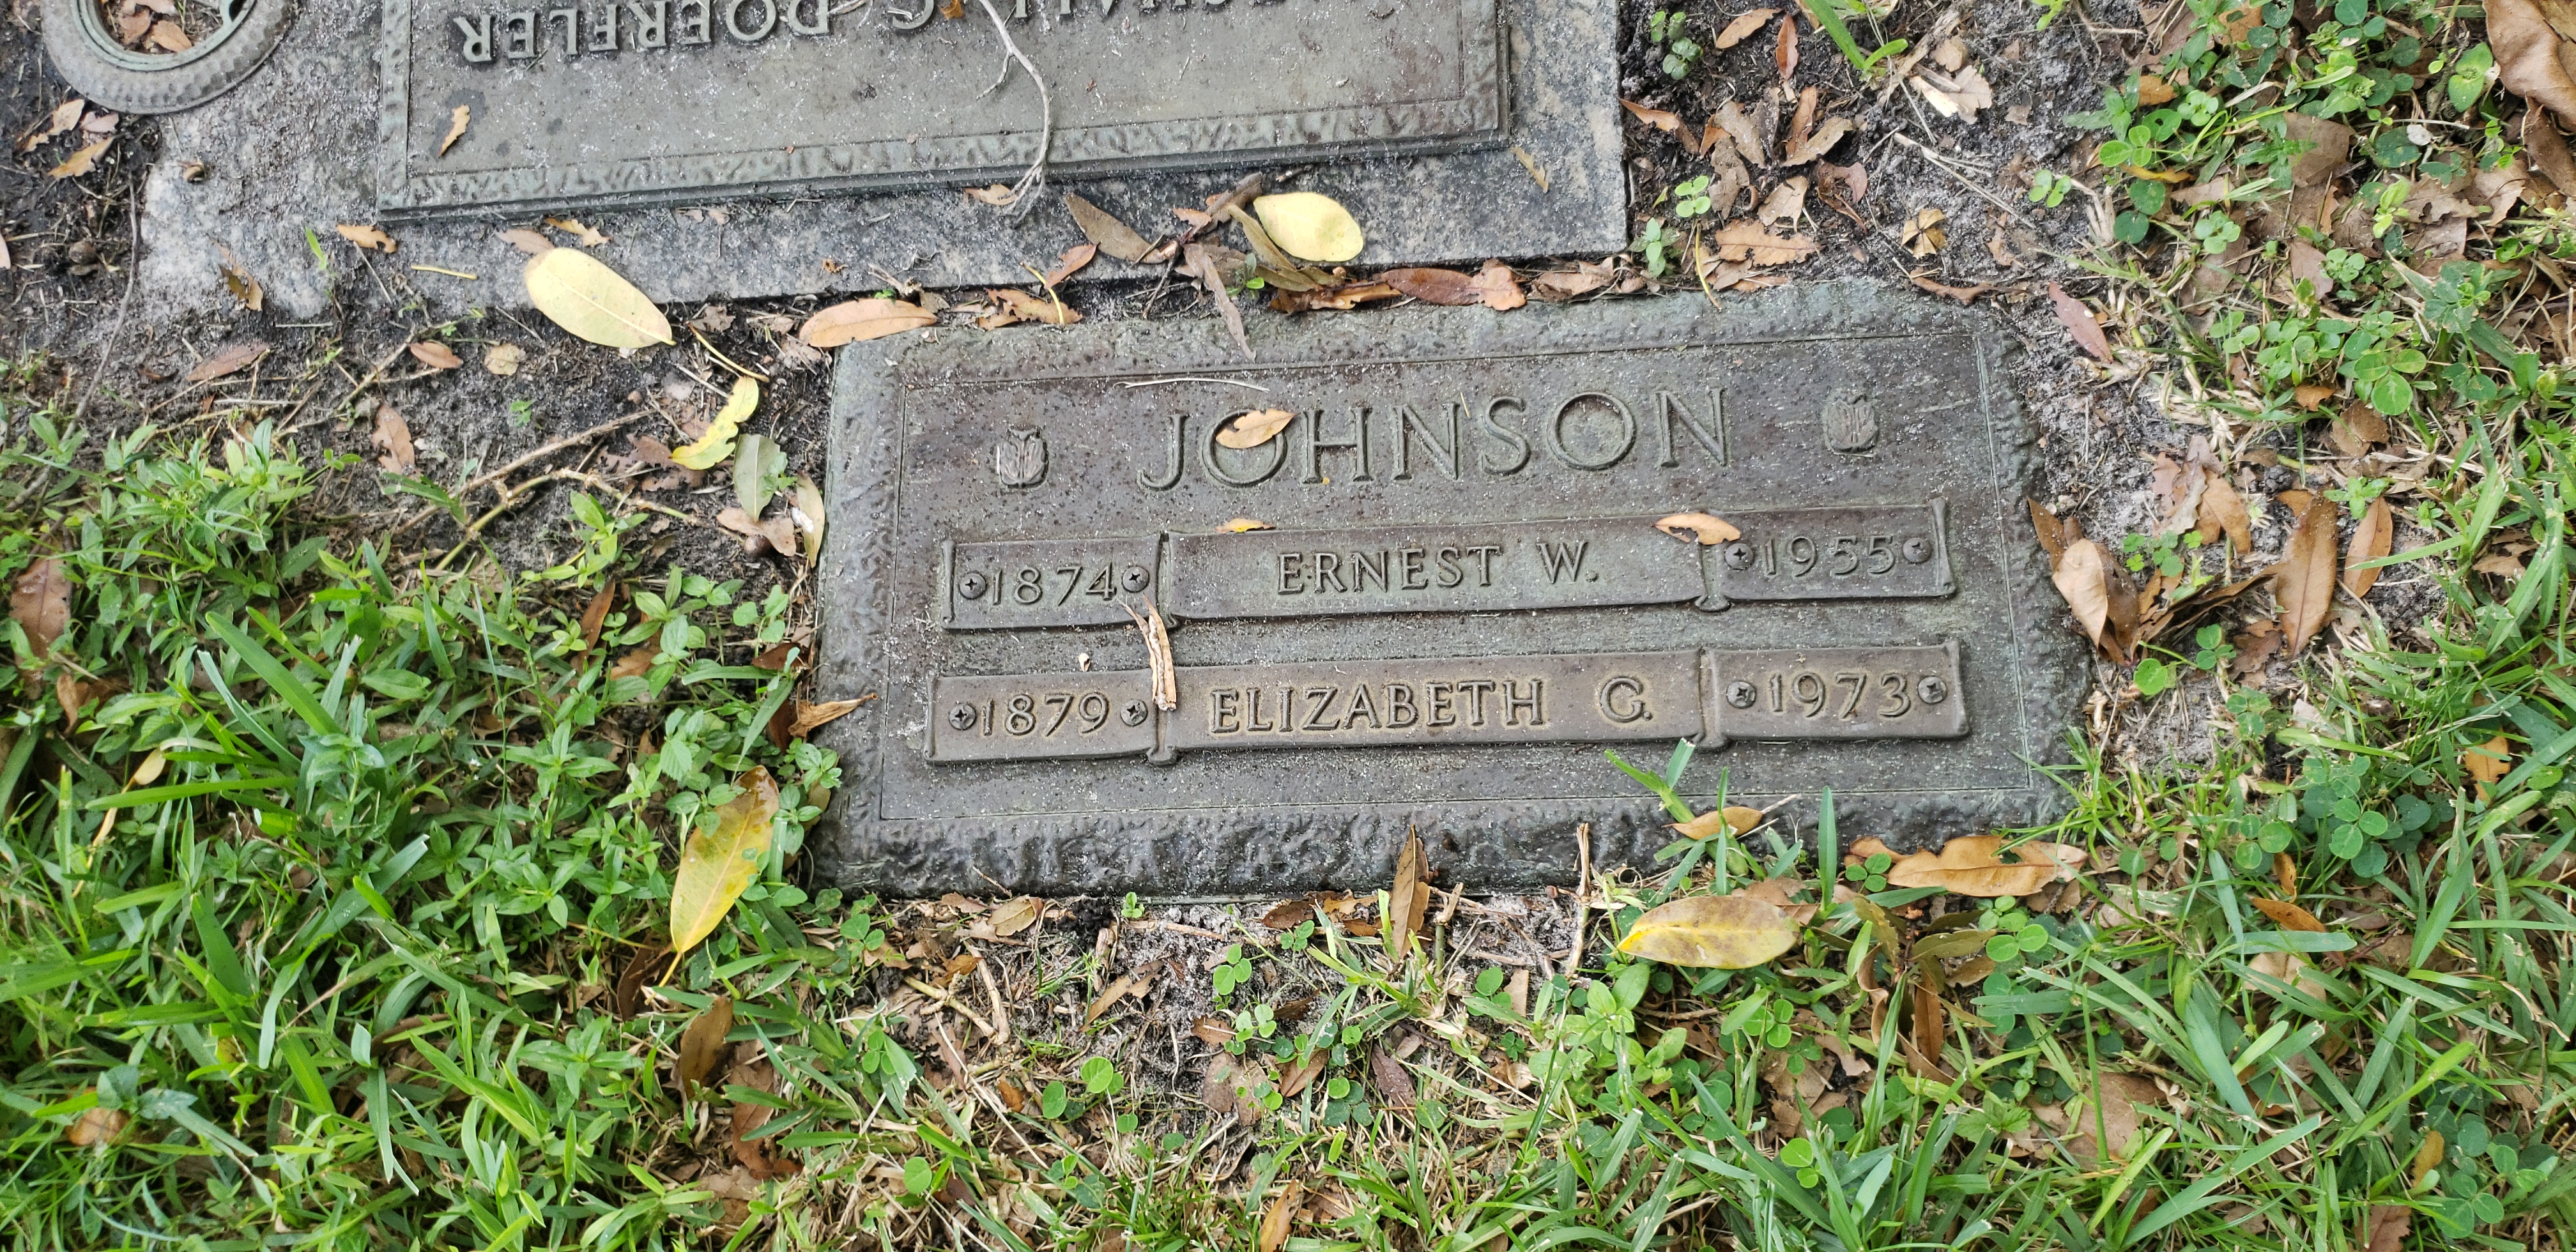 Ernest W Johnson